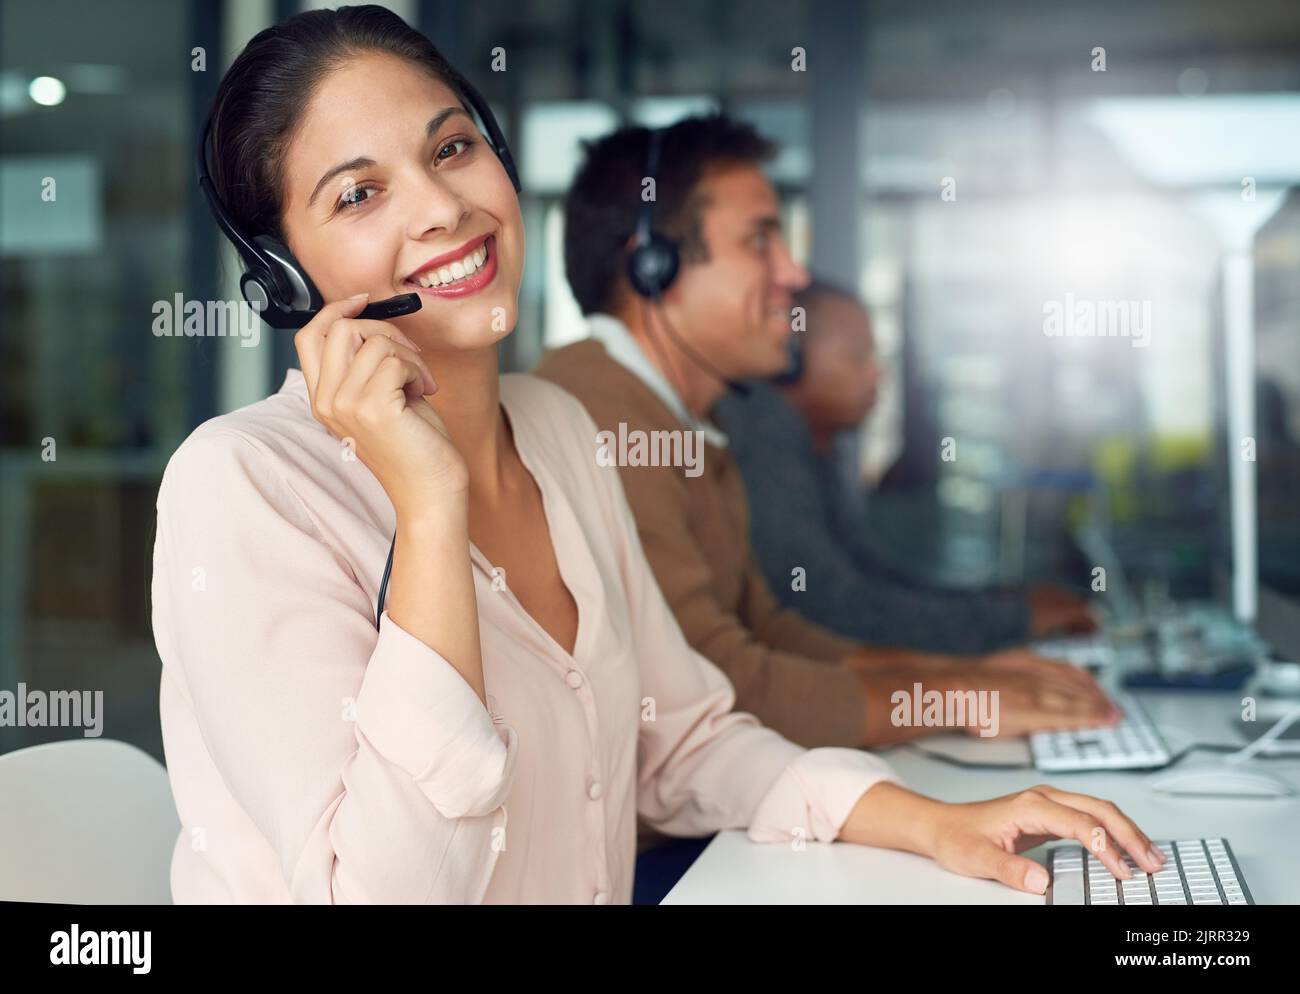 Rufen Sie uns jetzt an, um Rat von Experten zu erhalten. Porträt einer Callcenter-Agenten, die in einem Büro mit ihren Kollegen im Hintergrund arbeitet. Stockfoto